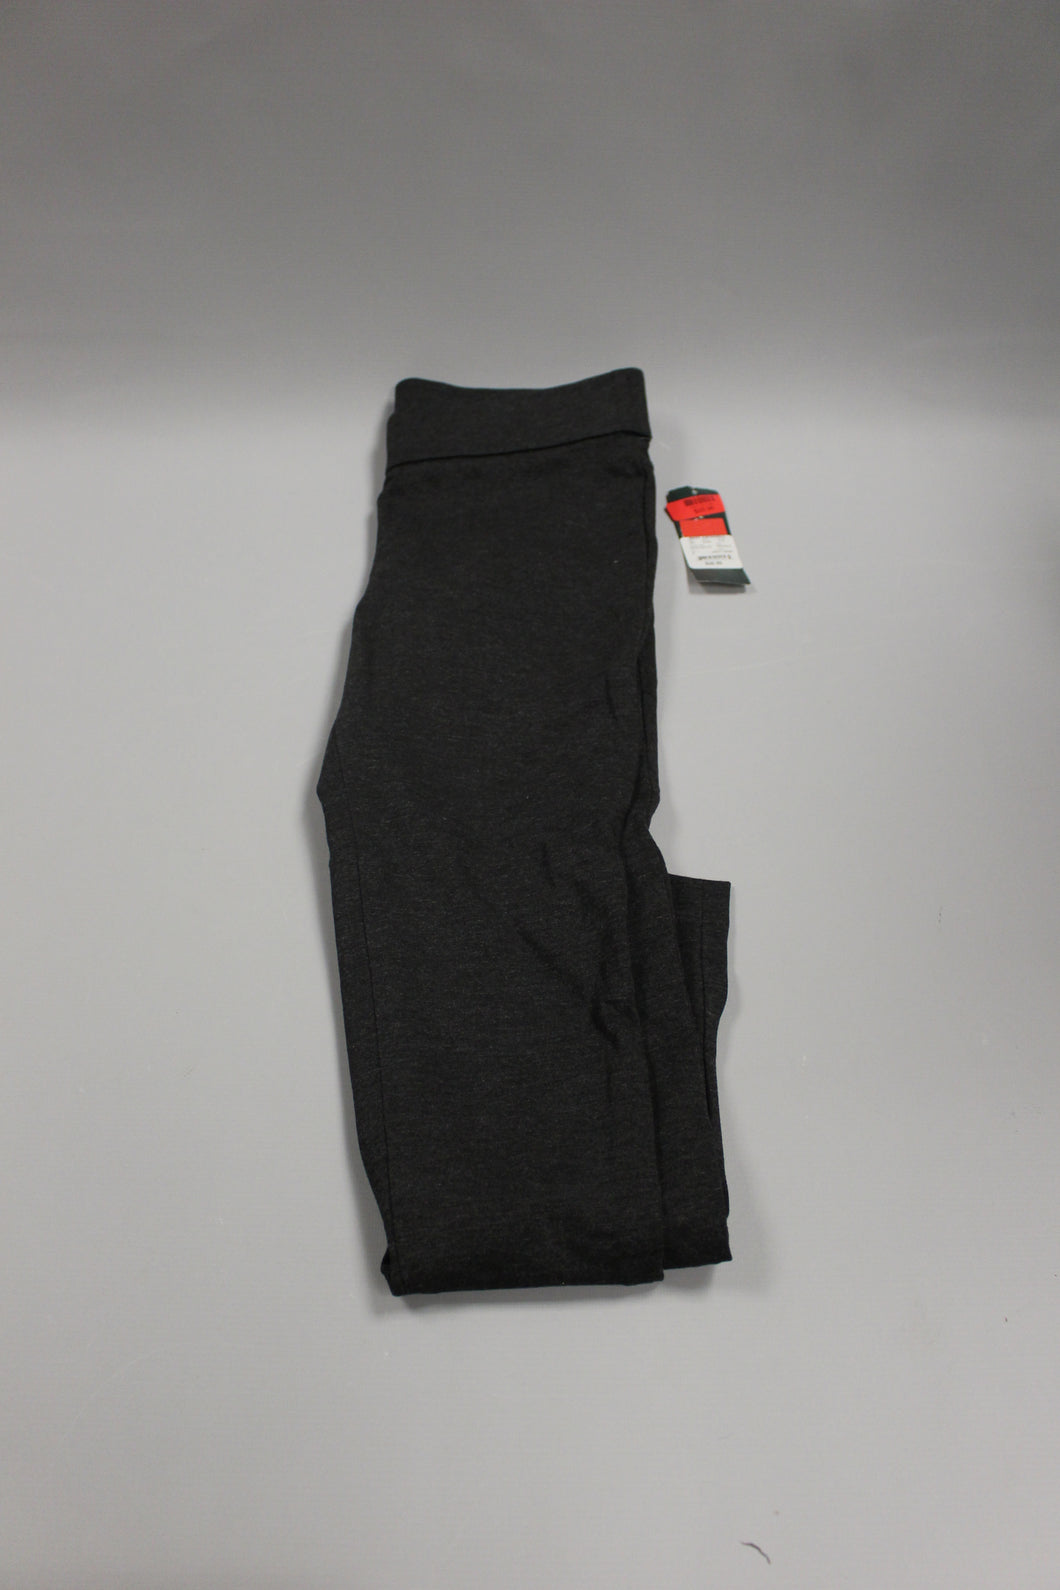 Ralph Lauren Grey/Dark Sweatpants - Size Small - New